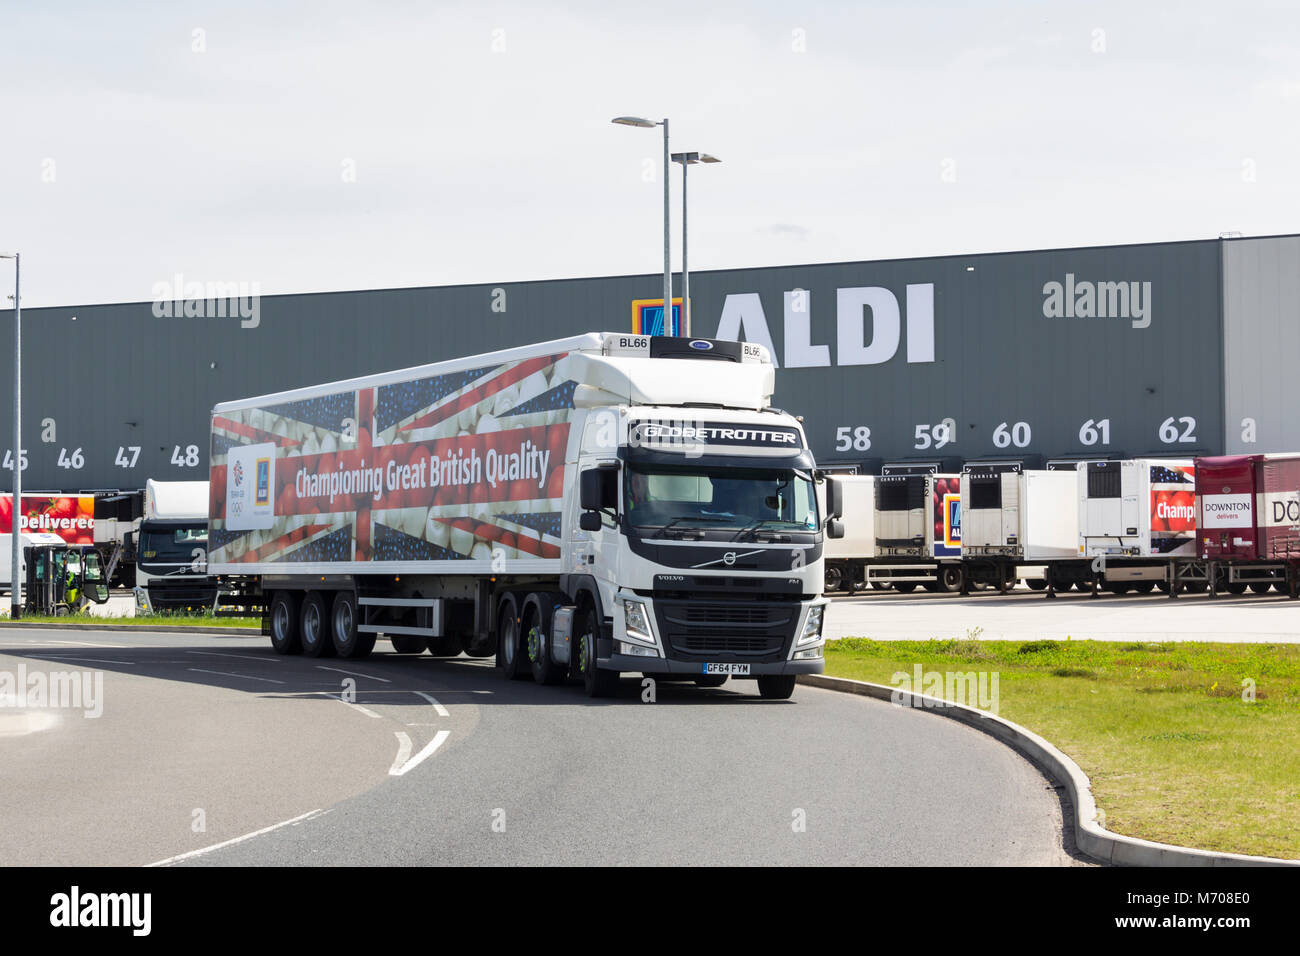 Aldi camión articulado marca Aldi, dejando el nuevo almacén de distribución logística en el norte, a lo largo de Hulton, Bolton. Foto de stock